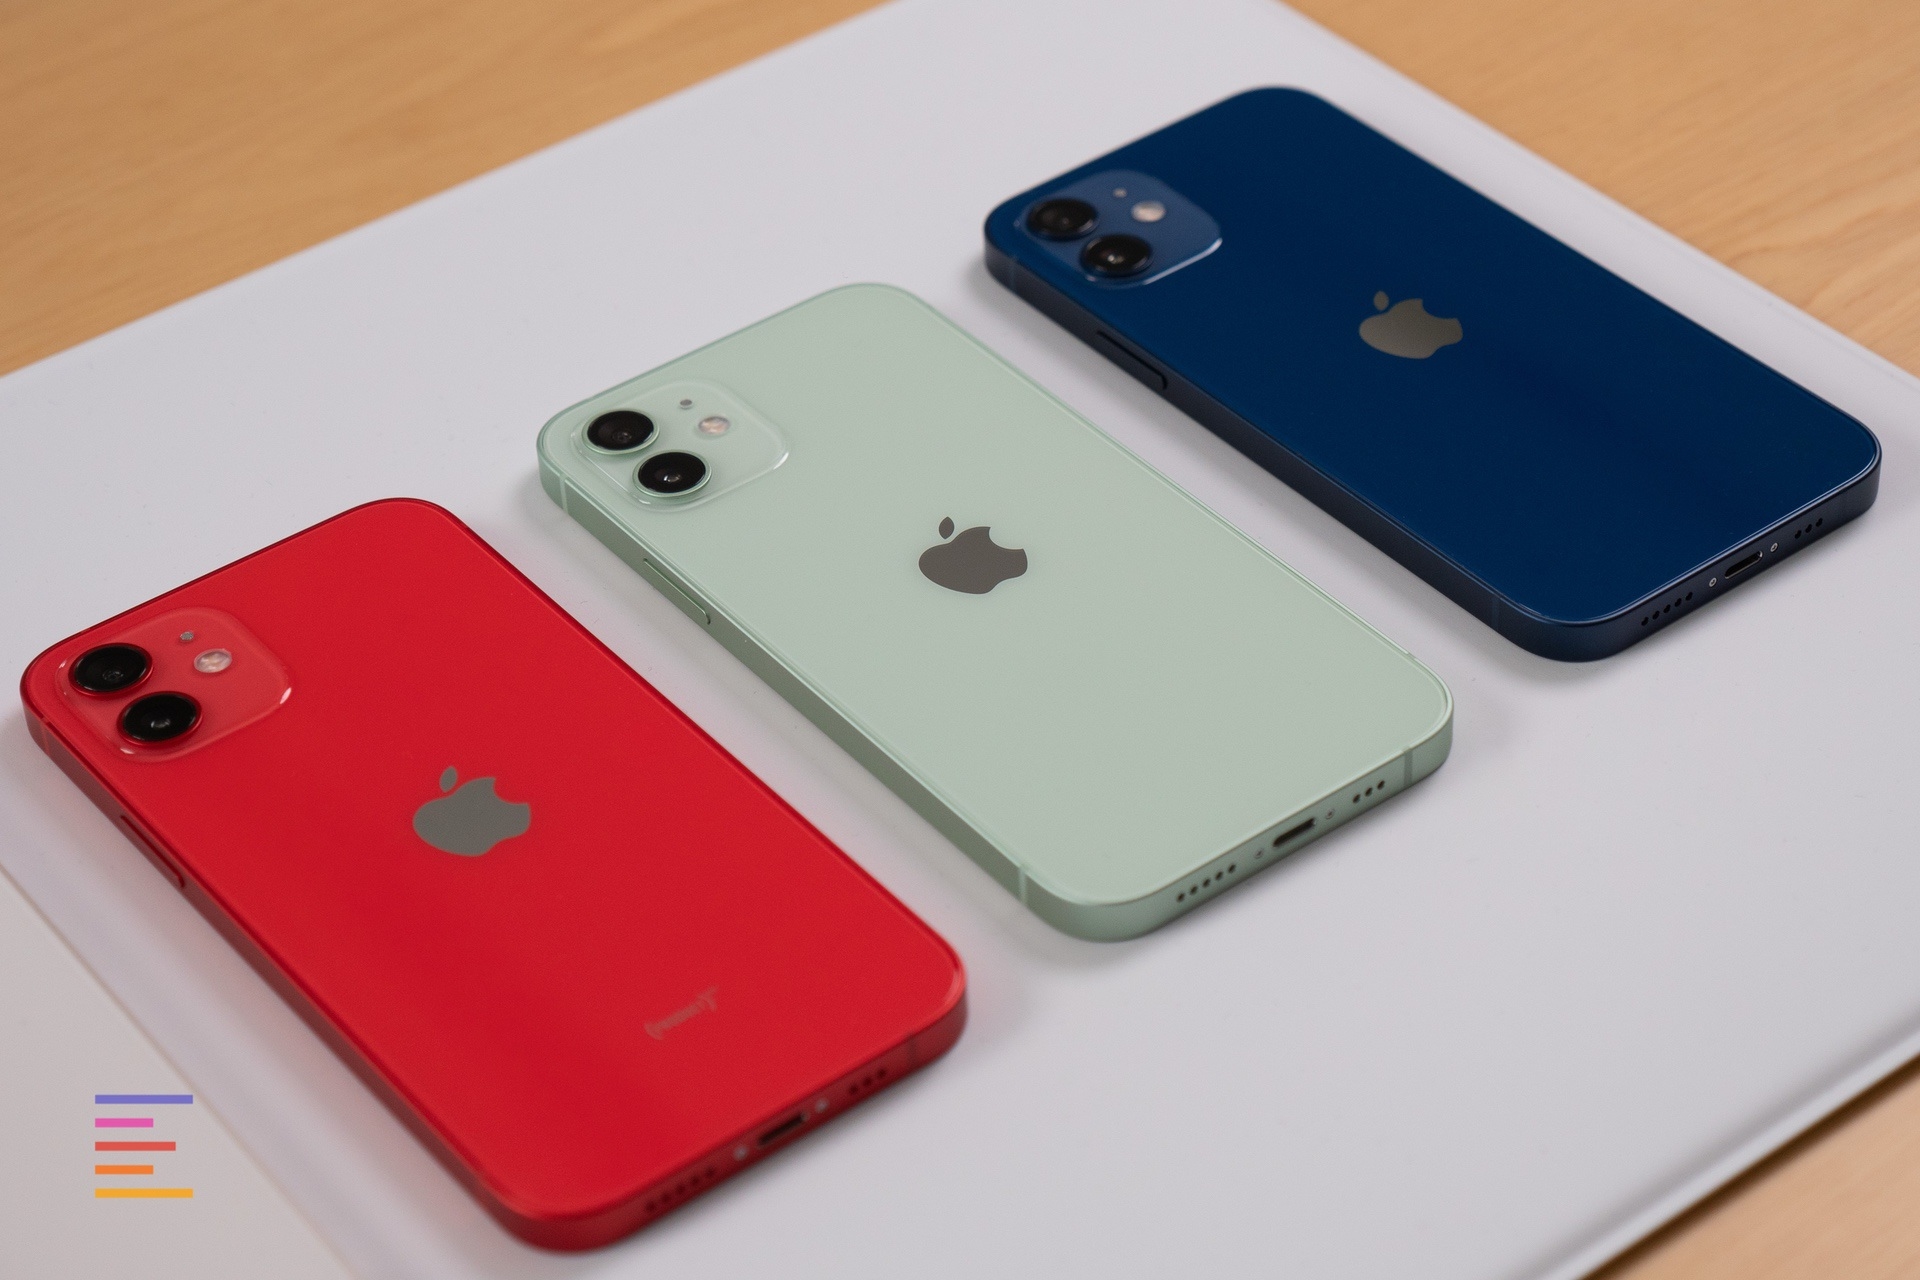 台灣 iPhone 12 / 12 Pro 正式開賣！所有顏色實機照片欣賞 | A14, Apple News, iPhone 12 Pro, iPhone 12實機 | iPhone News 愛瘋了